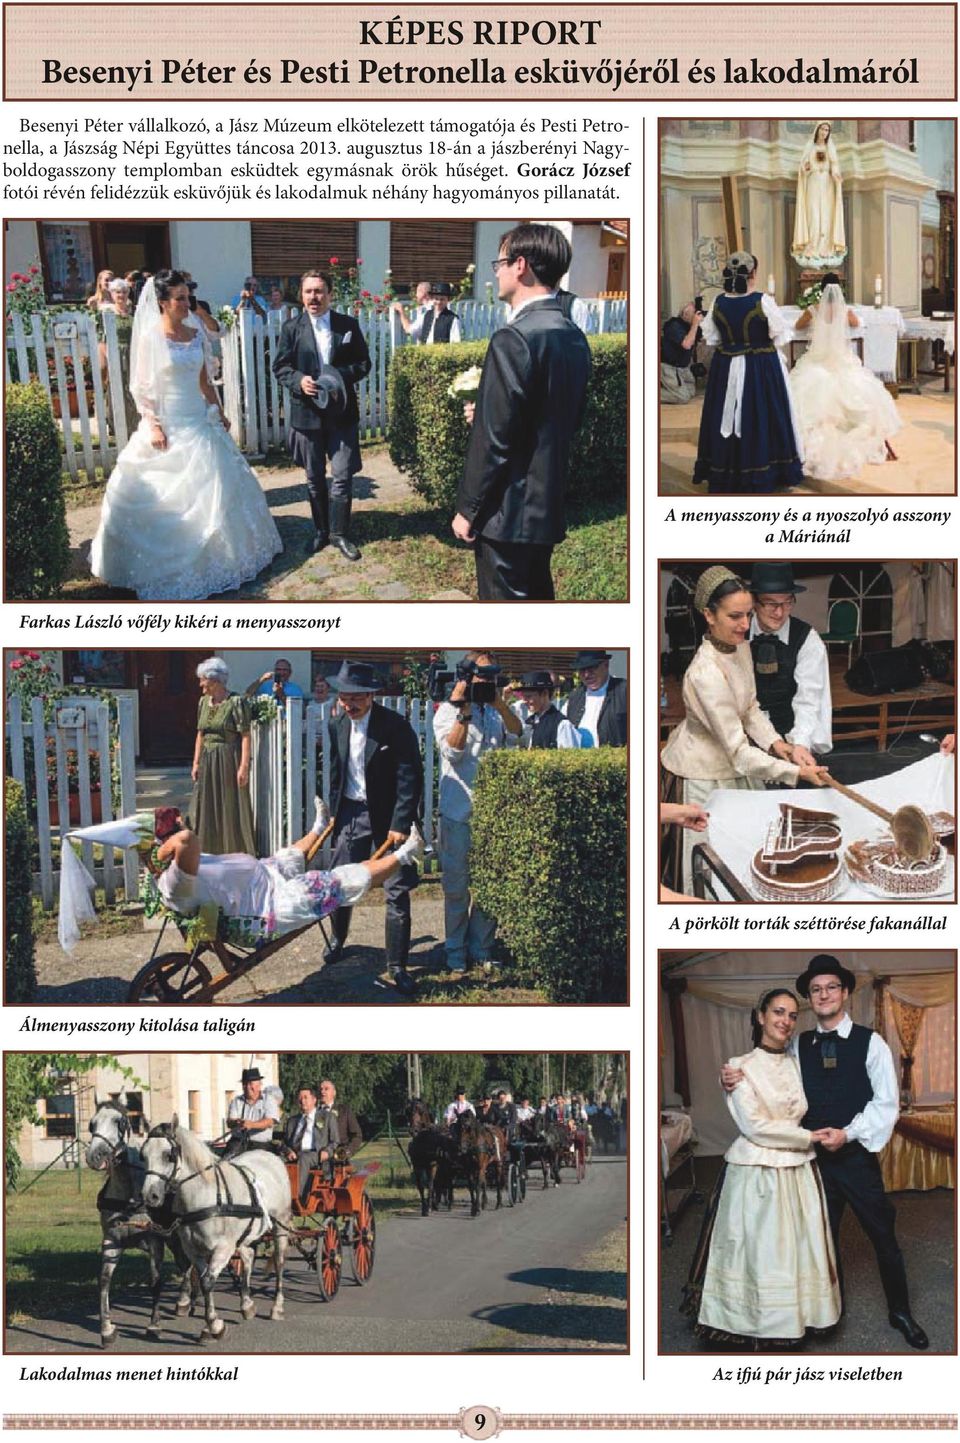 Gorácz József fotói révén felidézzük esküvőjük és lakodalmuk néhány hagyományos pillanatát.